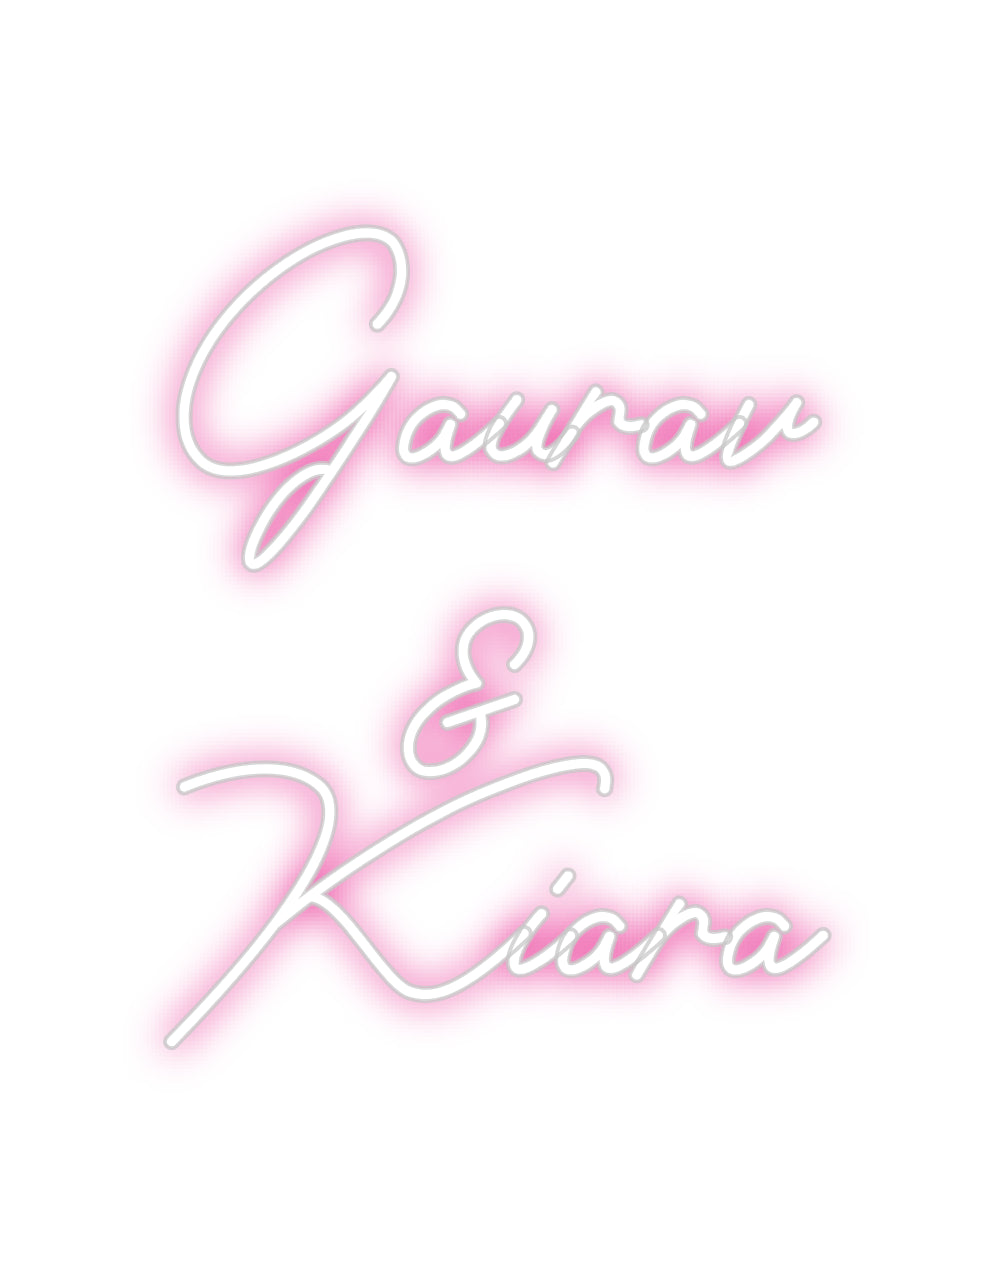 Custom Neon: Gaurav 
&
K...